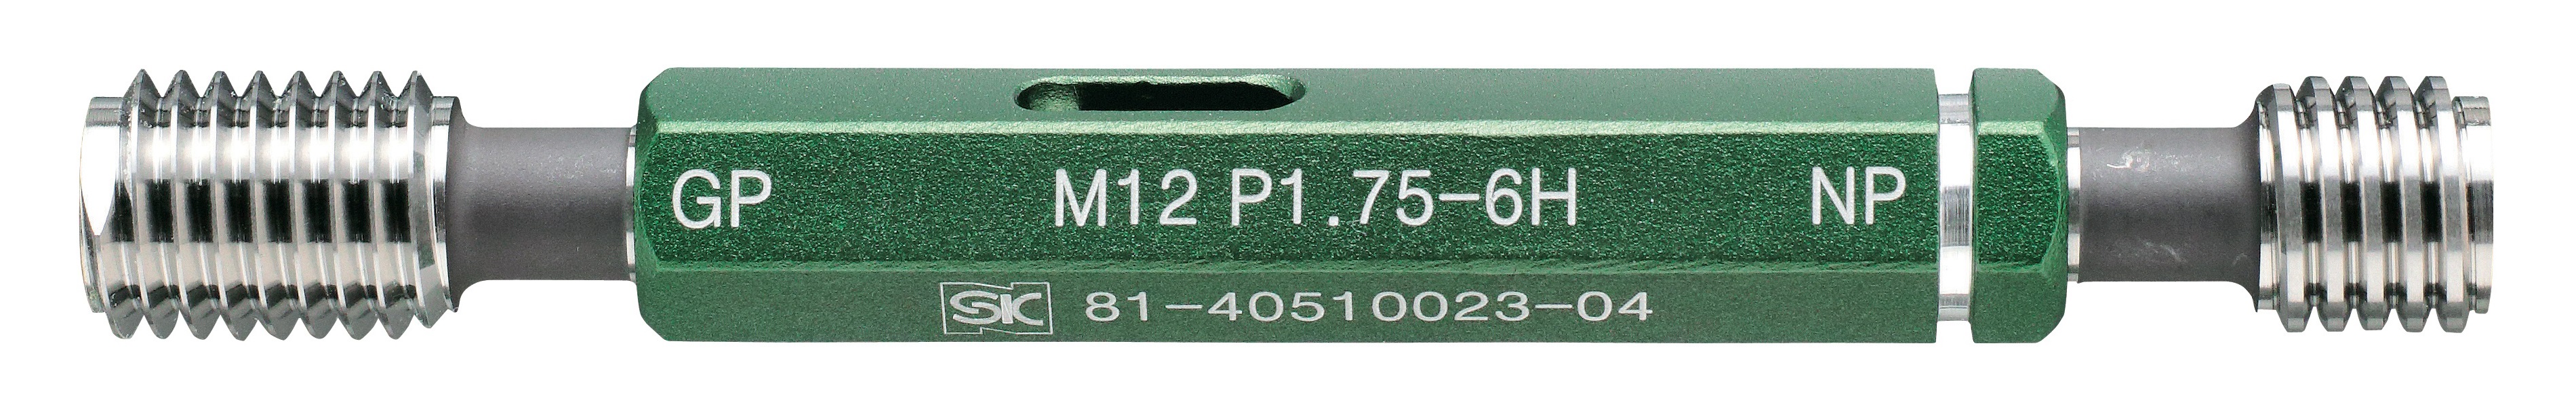 公式の M67 x 3.0 ねじプラグゲージ 基準器、ゲージ - www